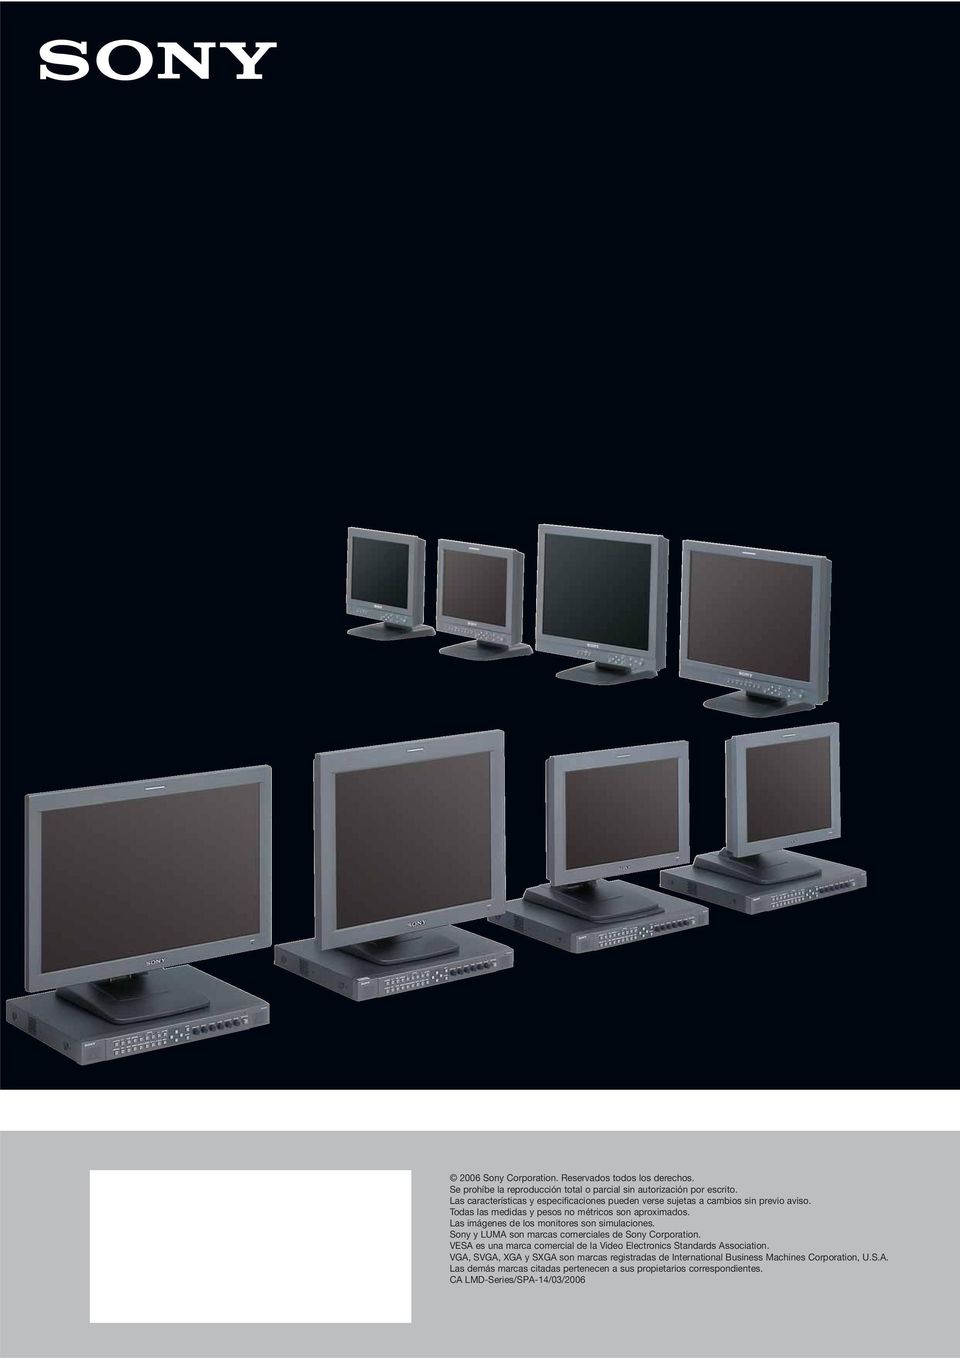 Las imágenes de los monitores son simulaciones. Sony y LUMA son marcas comerciales de Sony Corporation.